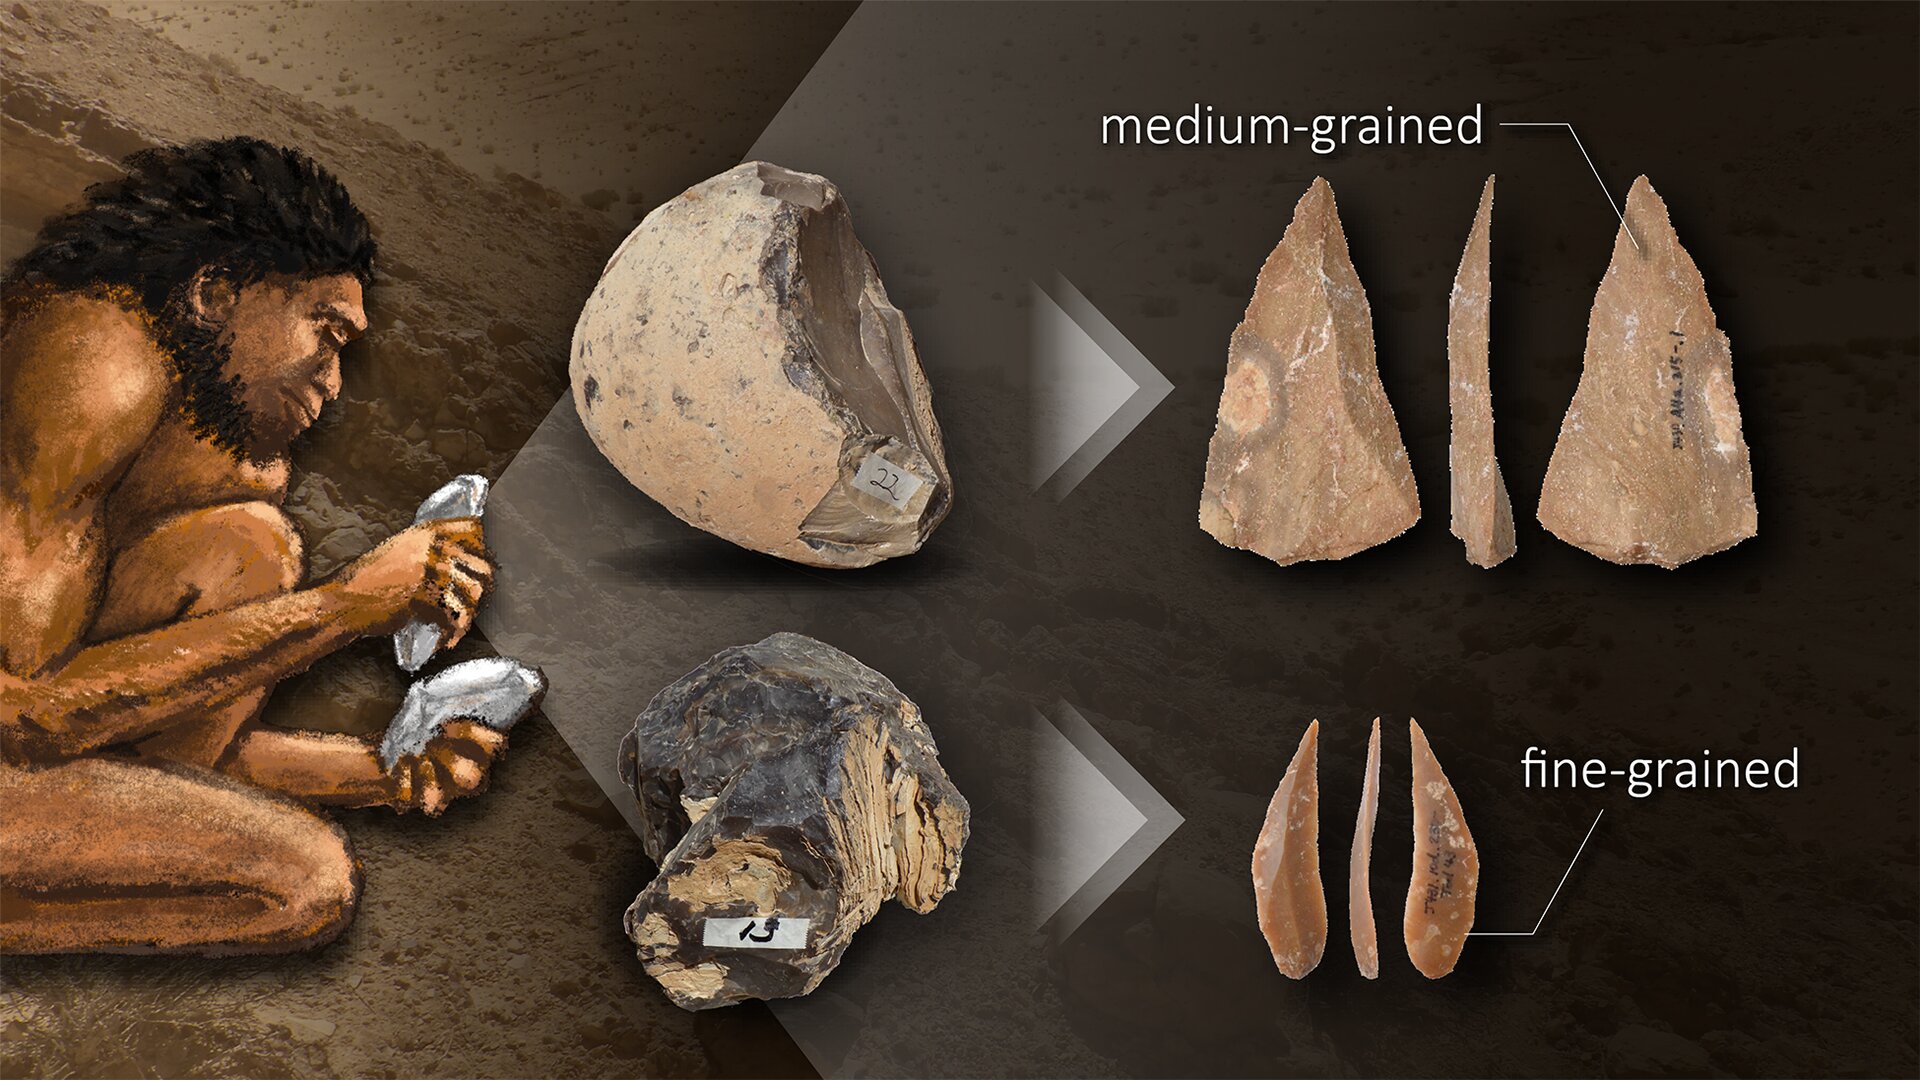 旧石器时代的人类可能已经了解了制造石器的岩石特性